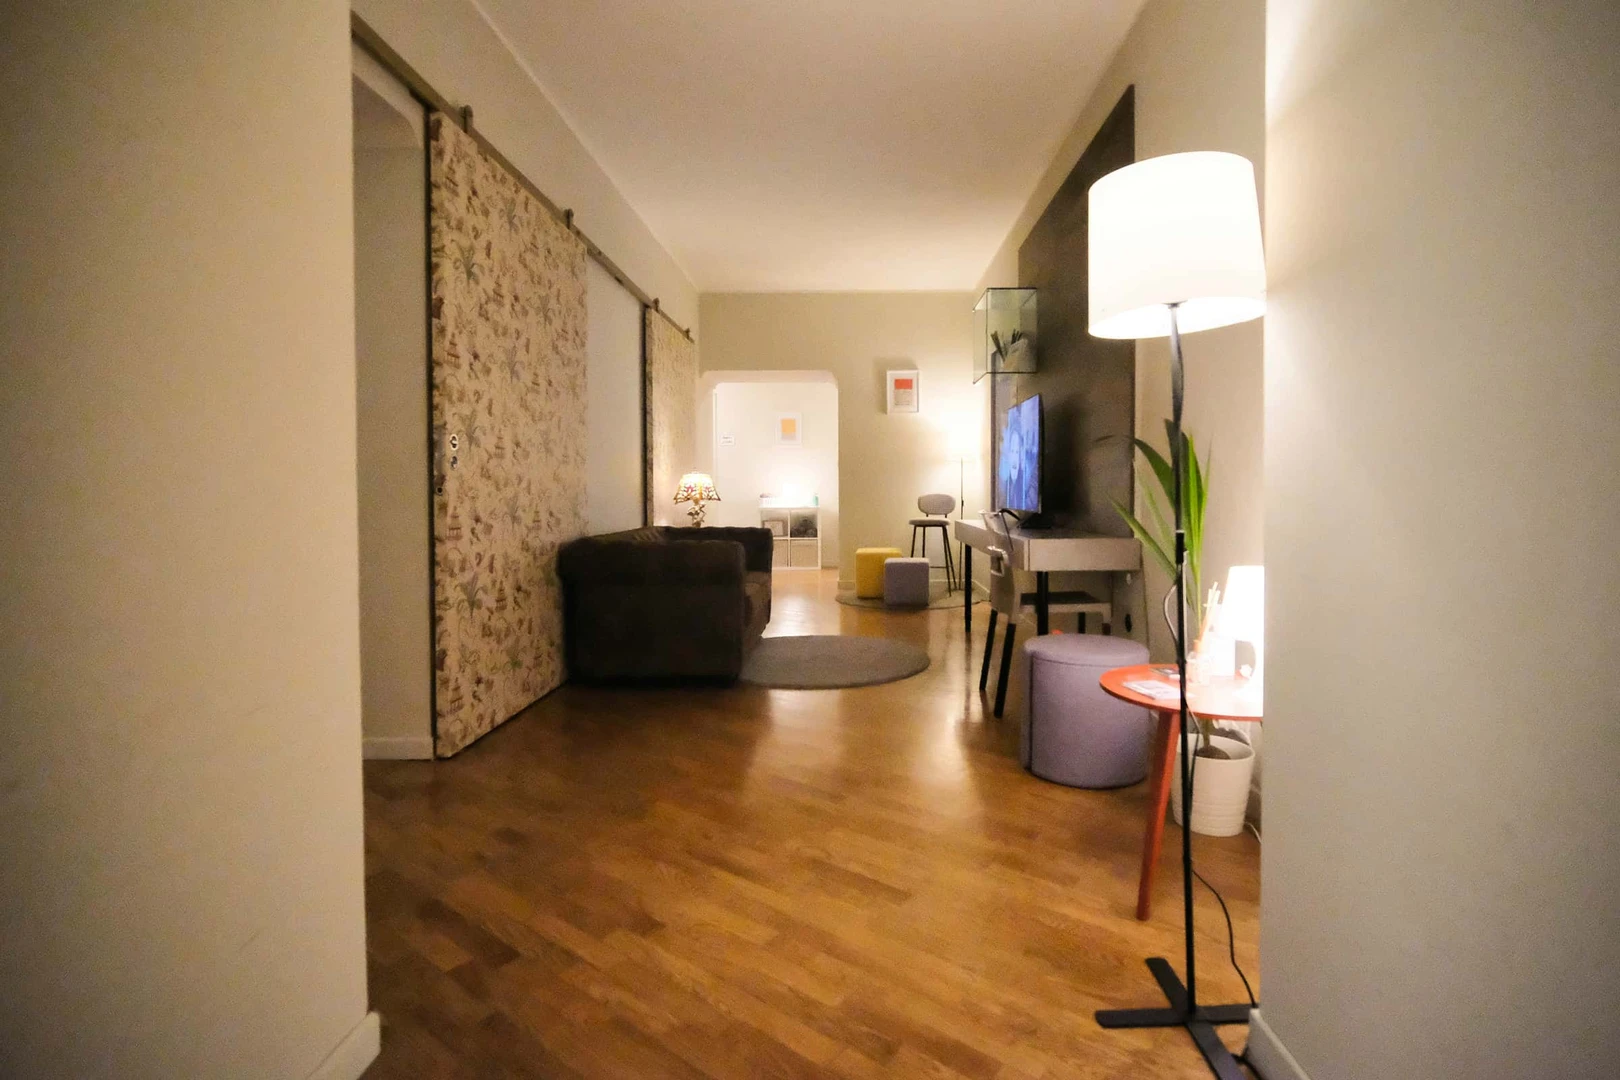 Stanza in condivisione in un appartamento di 3 camere da letto Torino